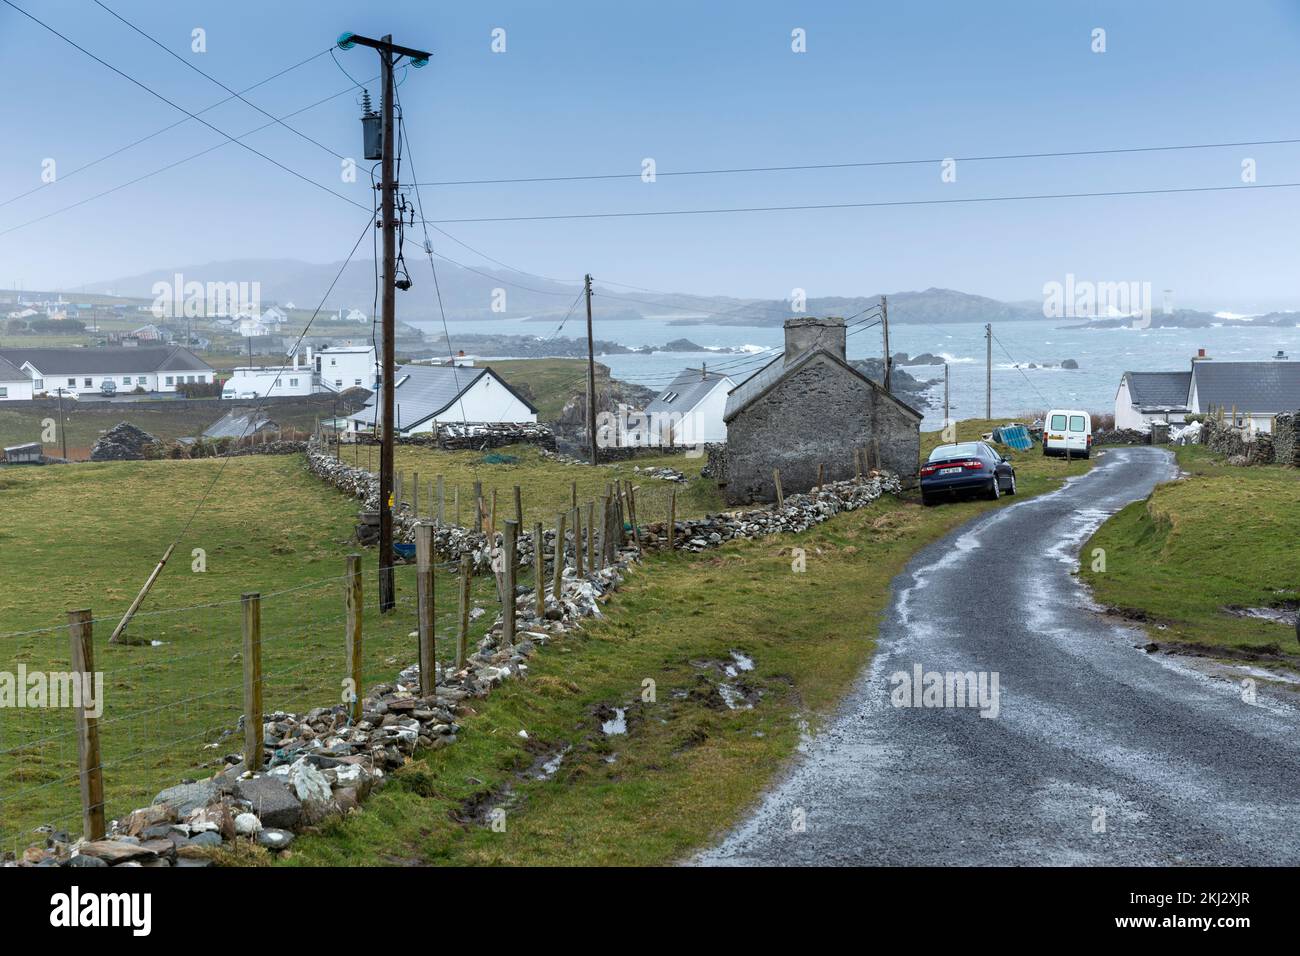 Irlanda, Inishbofin, una isla en las islas más occidentales de la costa irlandesa Foto de stock